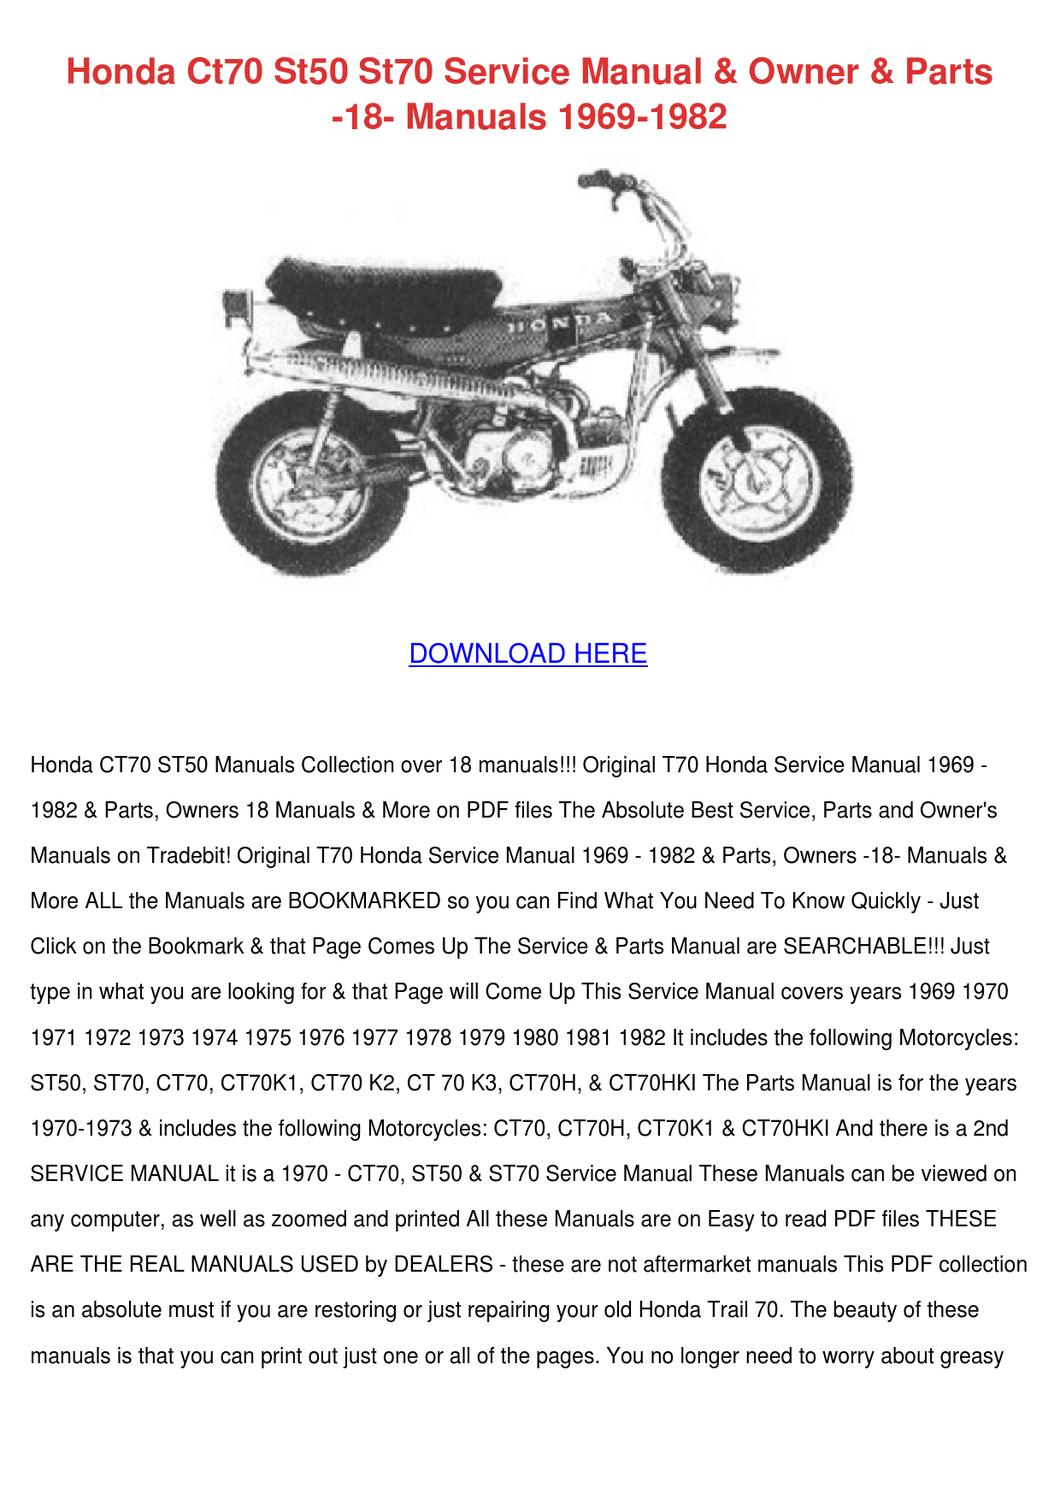 Honda ct70 service manual download pdf